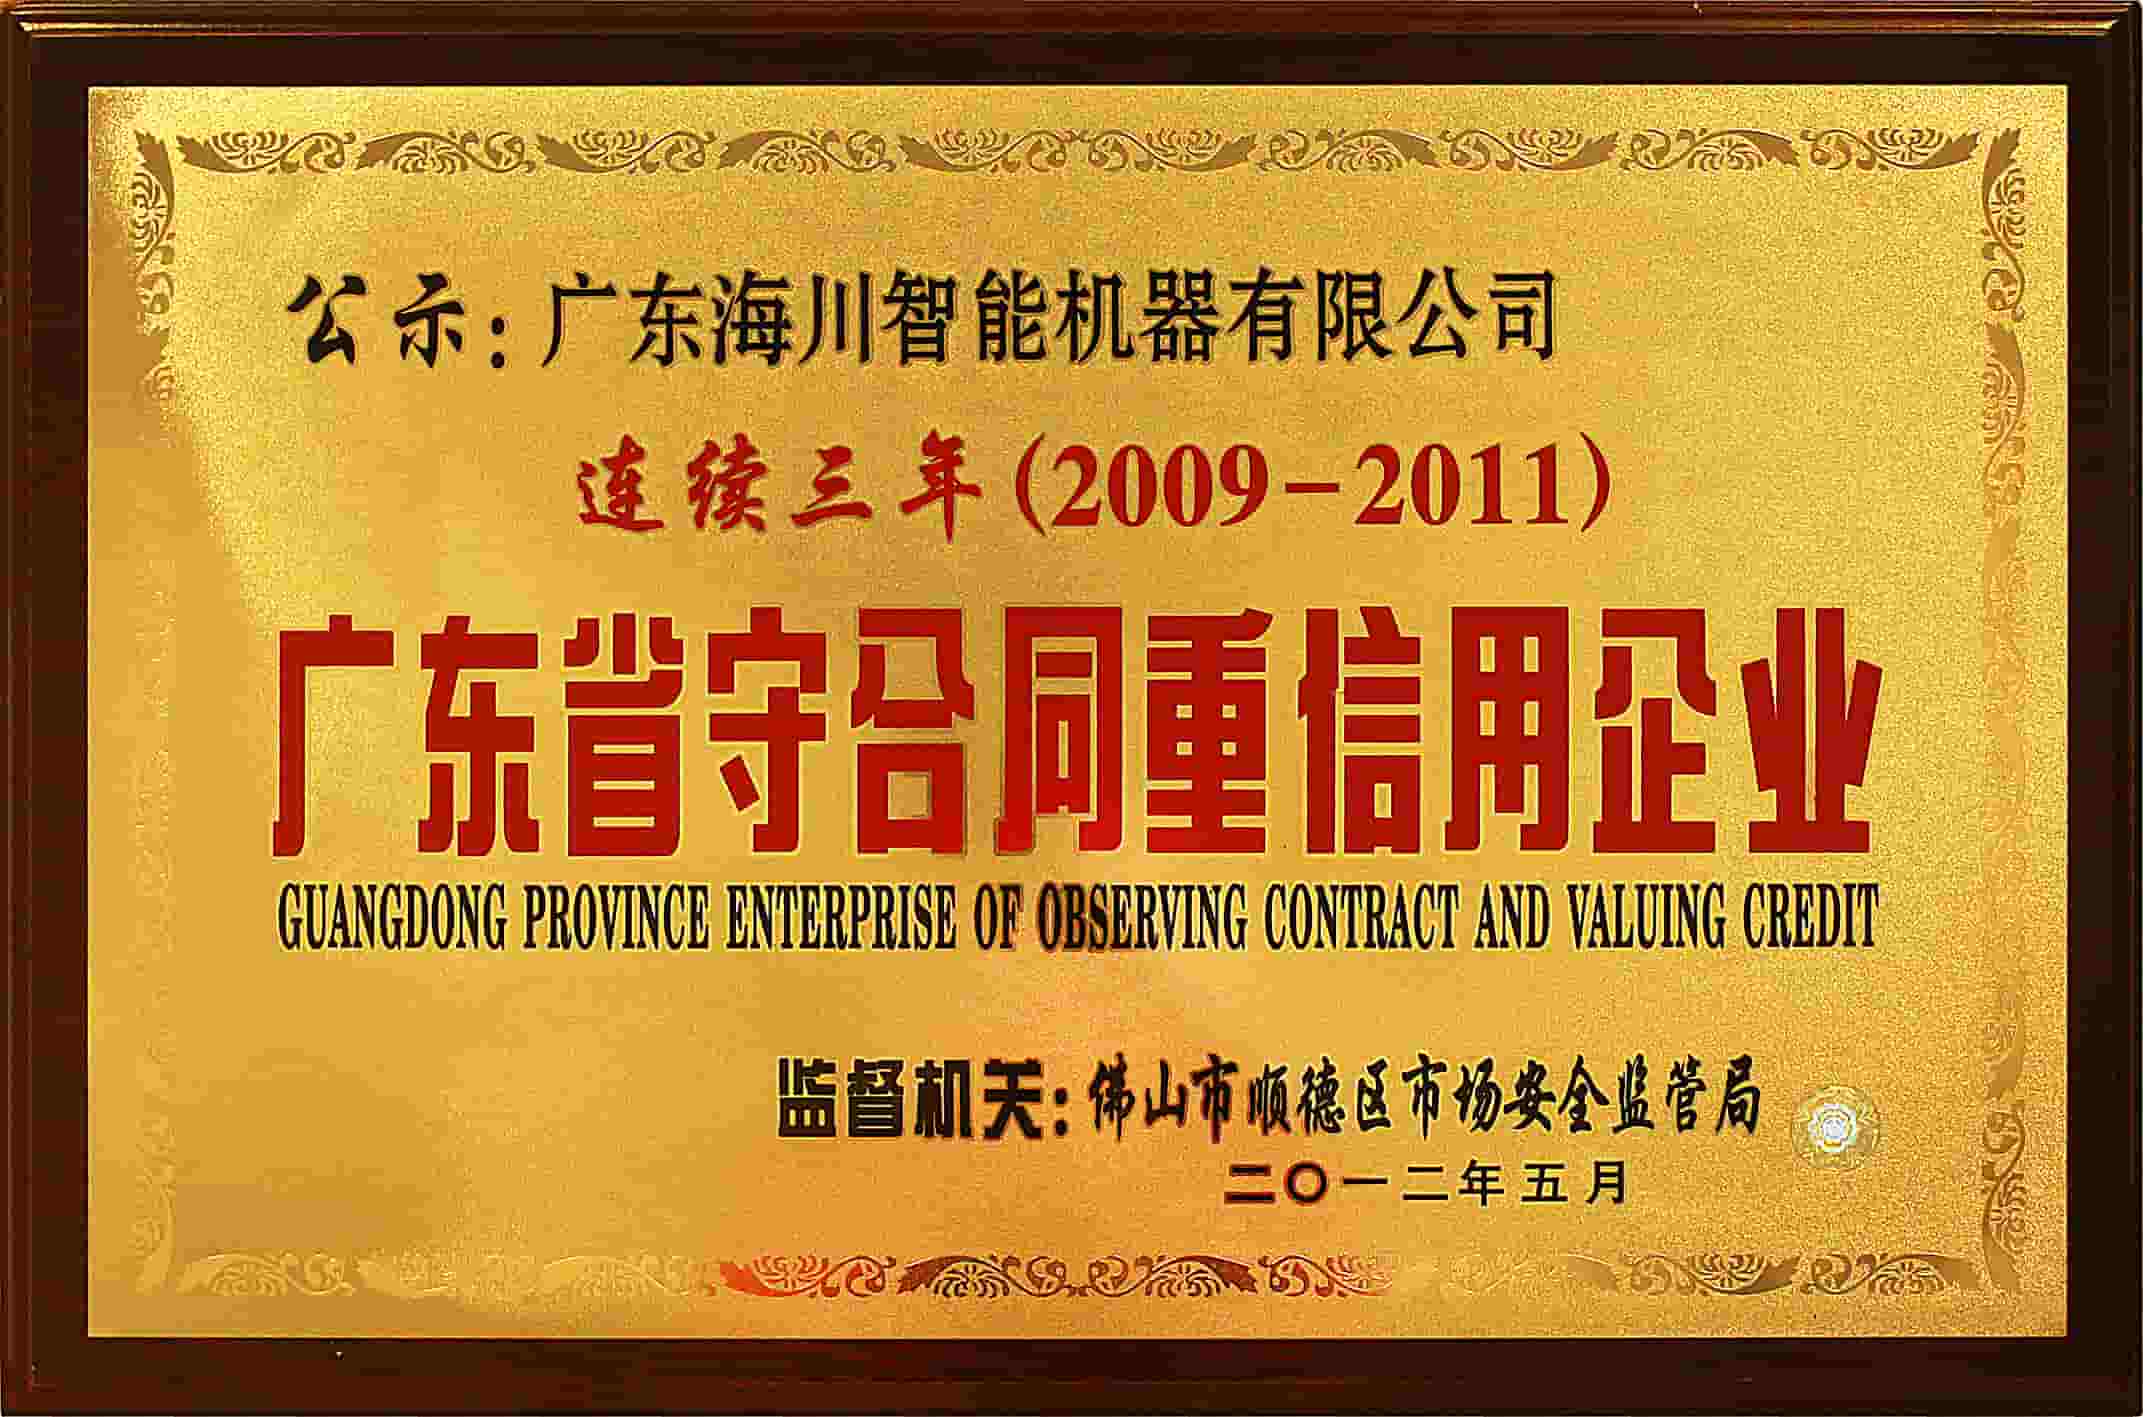 广东省 - 观光企业 - 合同 - 估值 - 信用-2009-2011